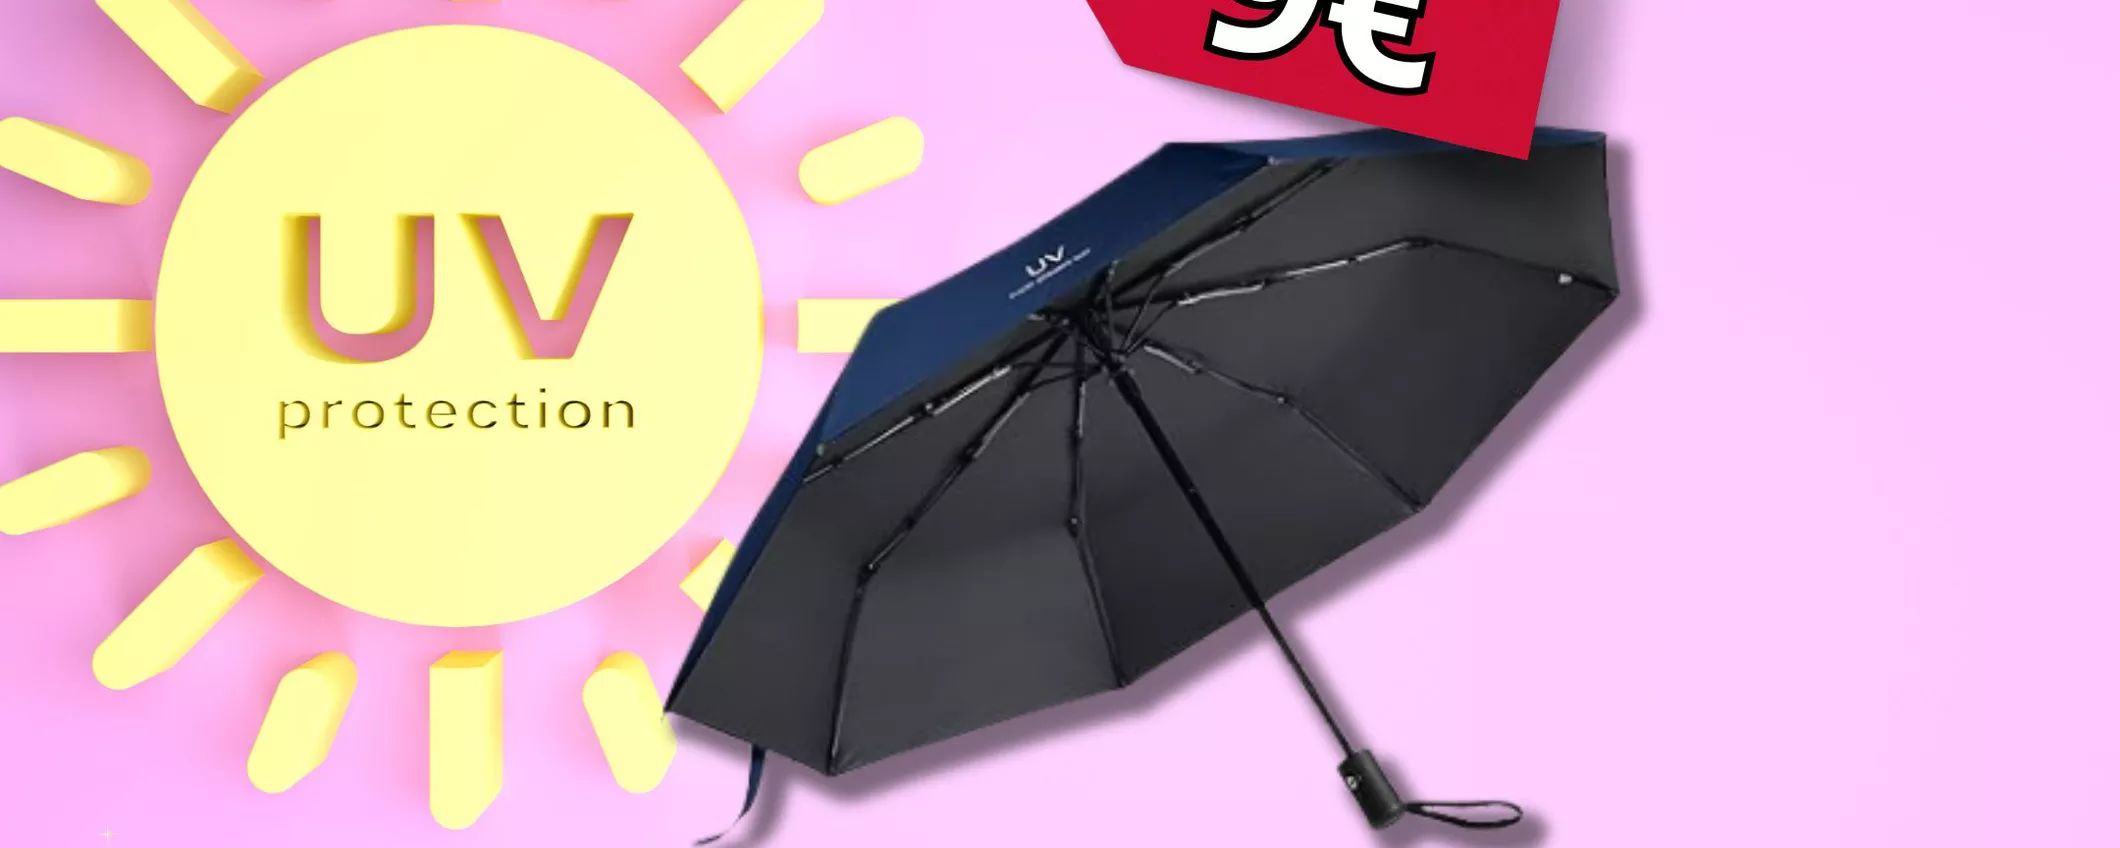 SOLO 9€ per l'Ombrello portatile che ti protegge dai raggi UV su Amazon!